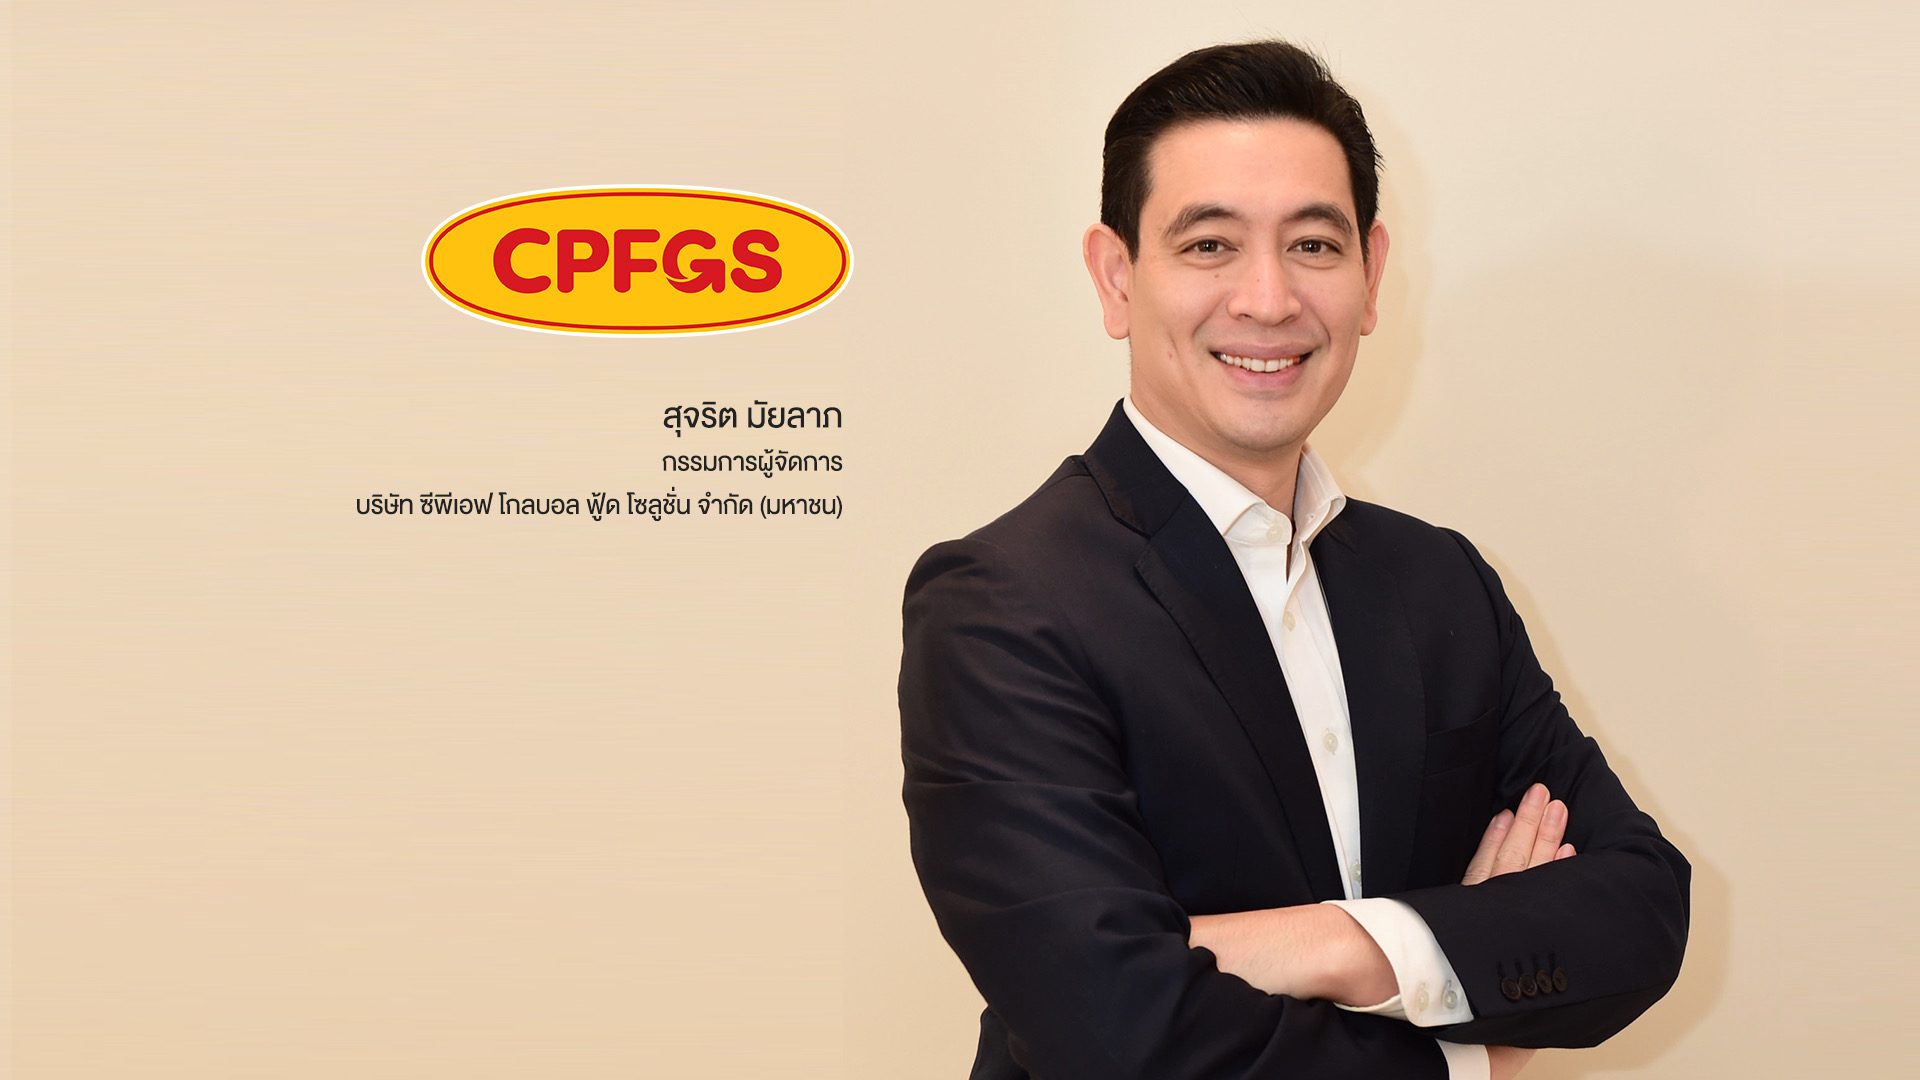 ซีพีเอฟ นำบริษัทย่อย บมจ.ซีพีเอฟ โกลบอล ฟู้ด โซลูชั่น’ หรือ CPFGS ยื่นไฟลิ่งเข้าระดมทุนในตลาดหลักทรัพย์แห่งประเทศไทย